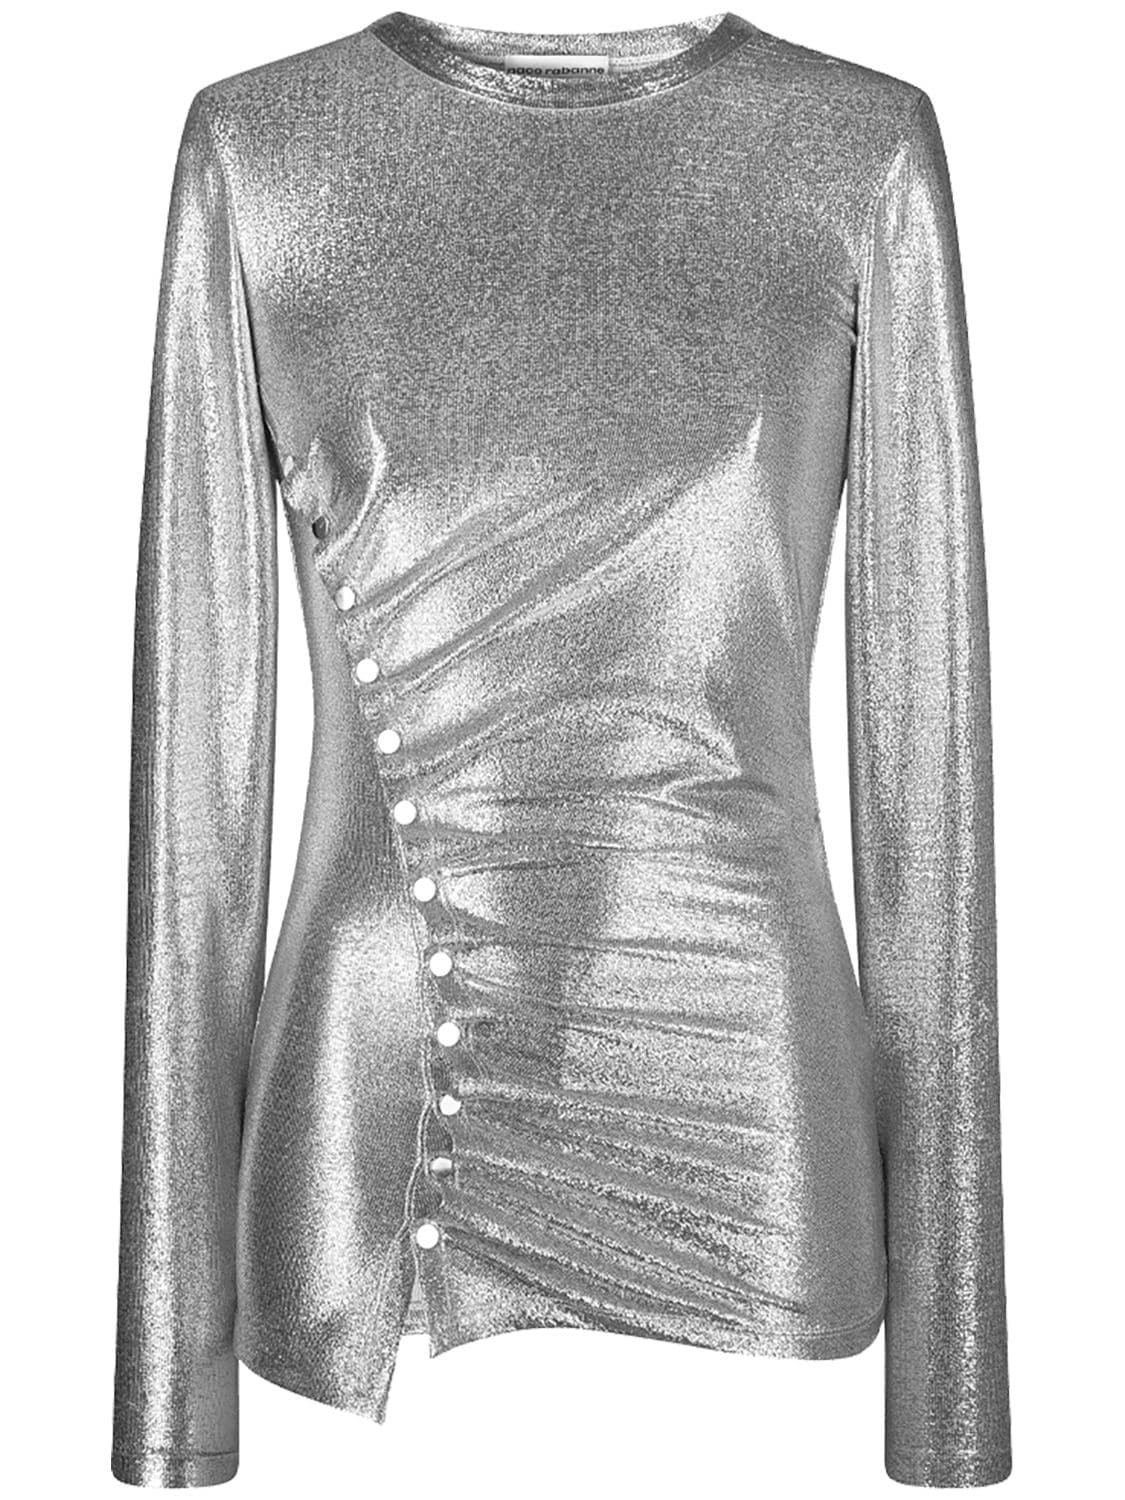 Image of Metallic Viscose Jersey Lurex Draped Top